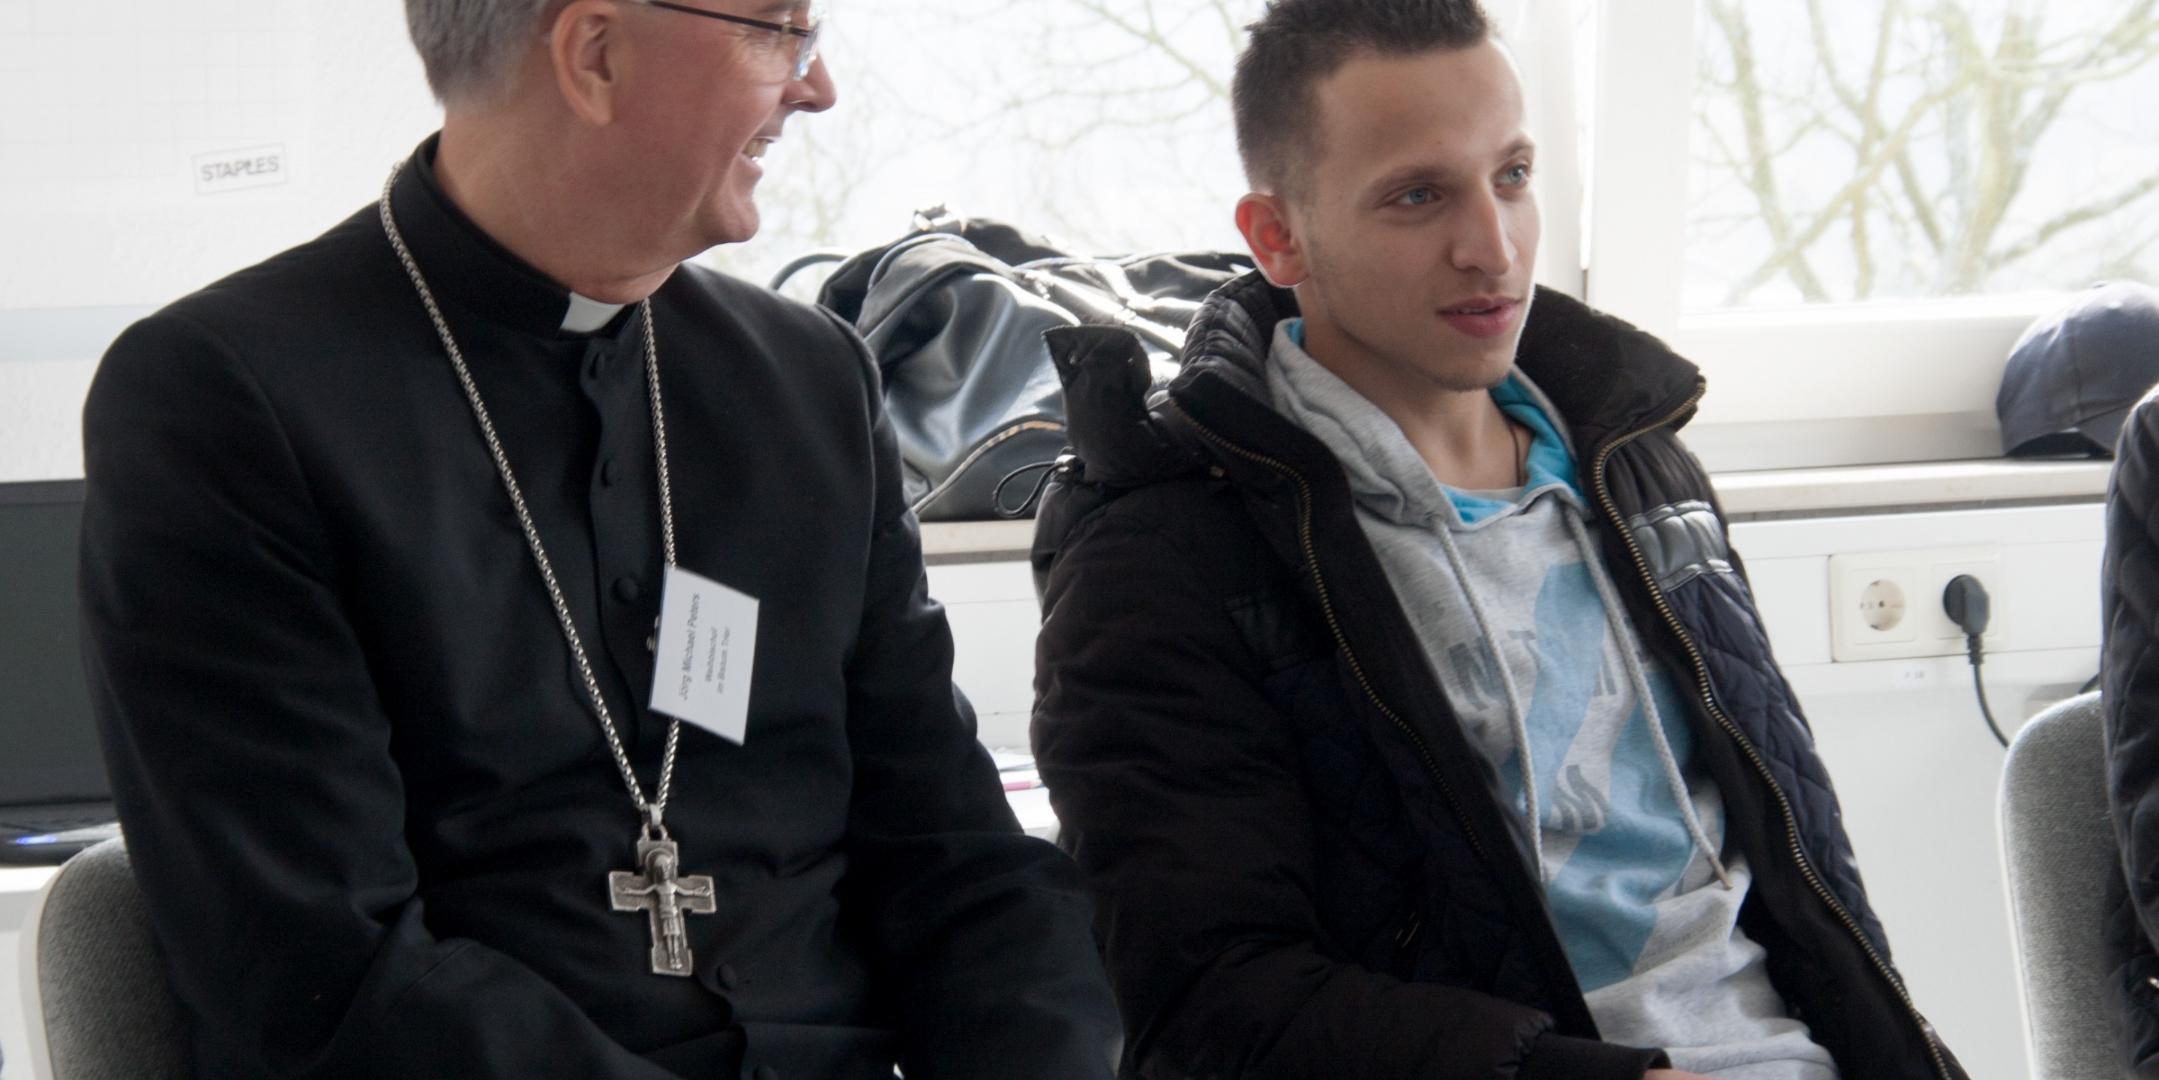 Weihbischof Peters im Gespräch mit einem jungen Mann, der einen Jugendintegrationskurs besucht.